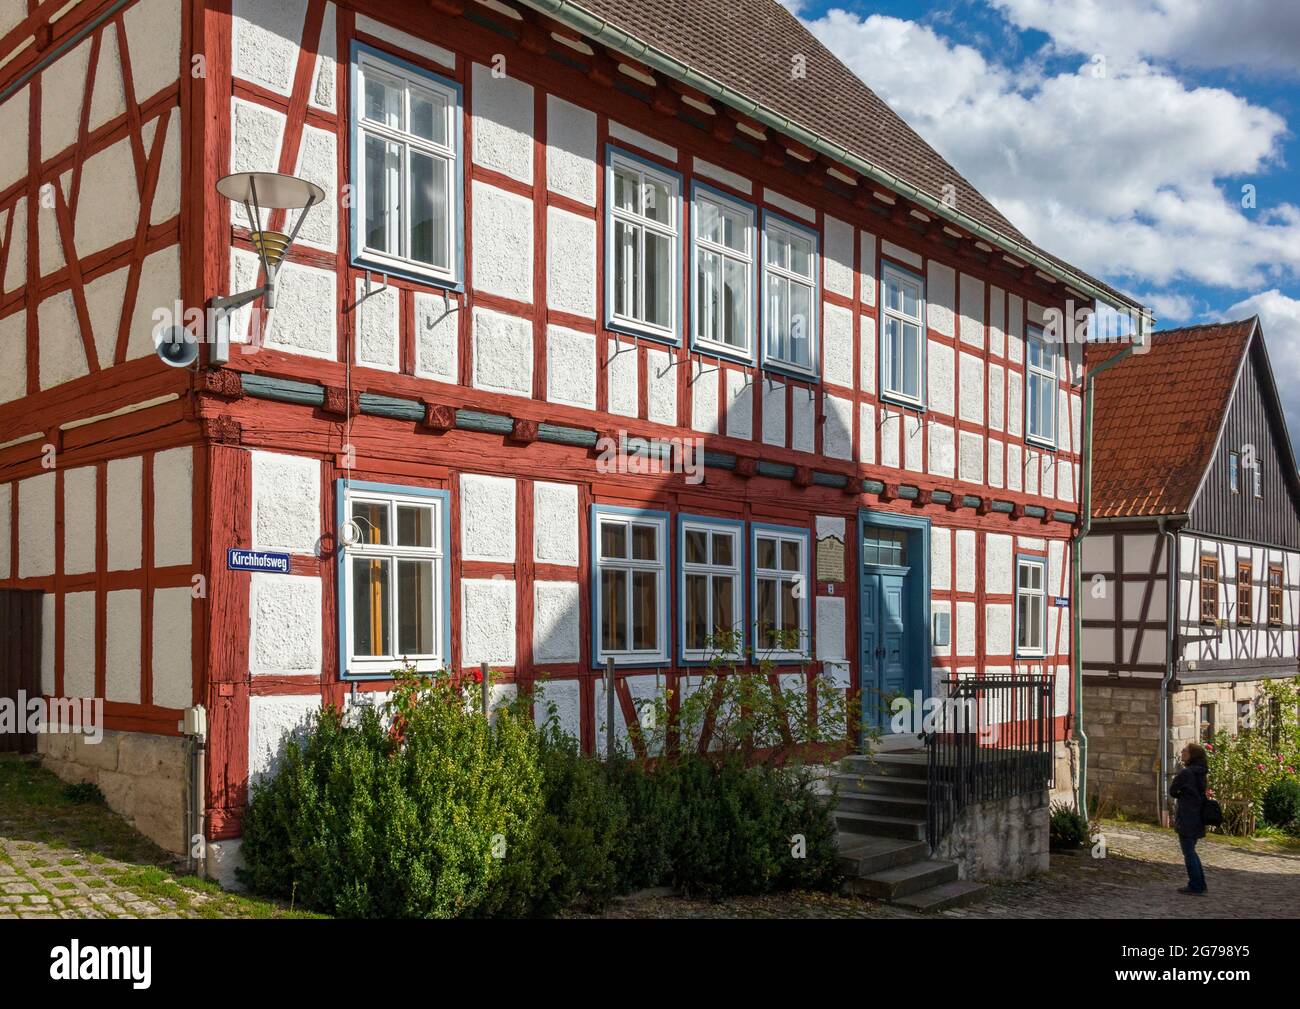 Ummerstadt ist (2019) die kleinste Stadt Thüringens. Die historische Altstadt von Ummerstadt mit ihren vielen Fachwerkhäusern ist ein denkmalgeschütztes Gebäude. Besonders interessant ist der Marktplatz am oberen Ende, auf dem Friedrich Konrad Müller geboren wurde. Müller, der sich "Müller von der Werra" nannte, war Gründer des Deutschen Sängerverbandes. Stockfoto